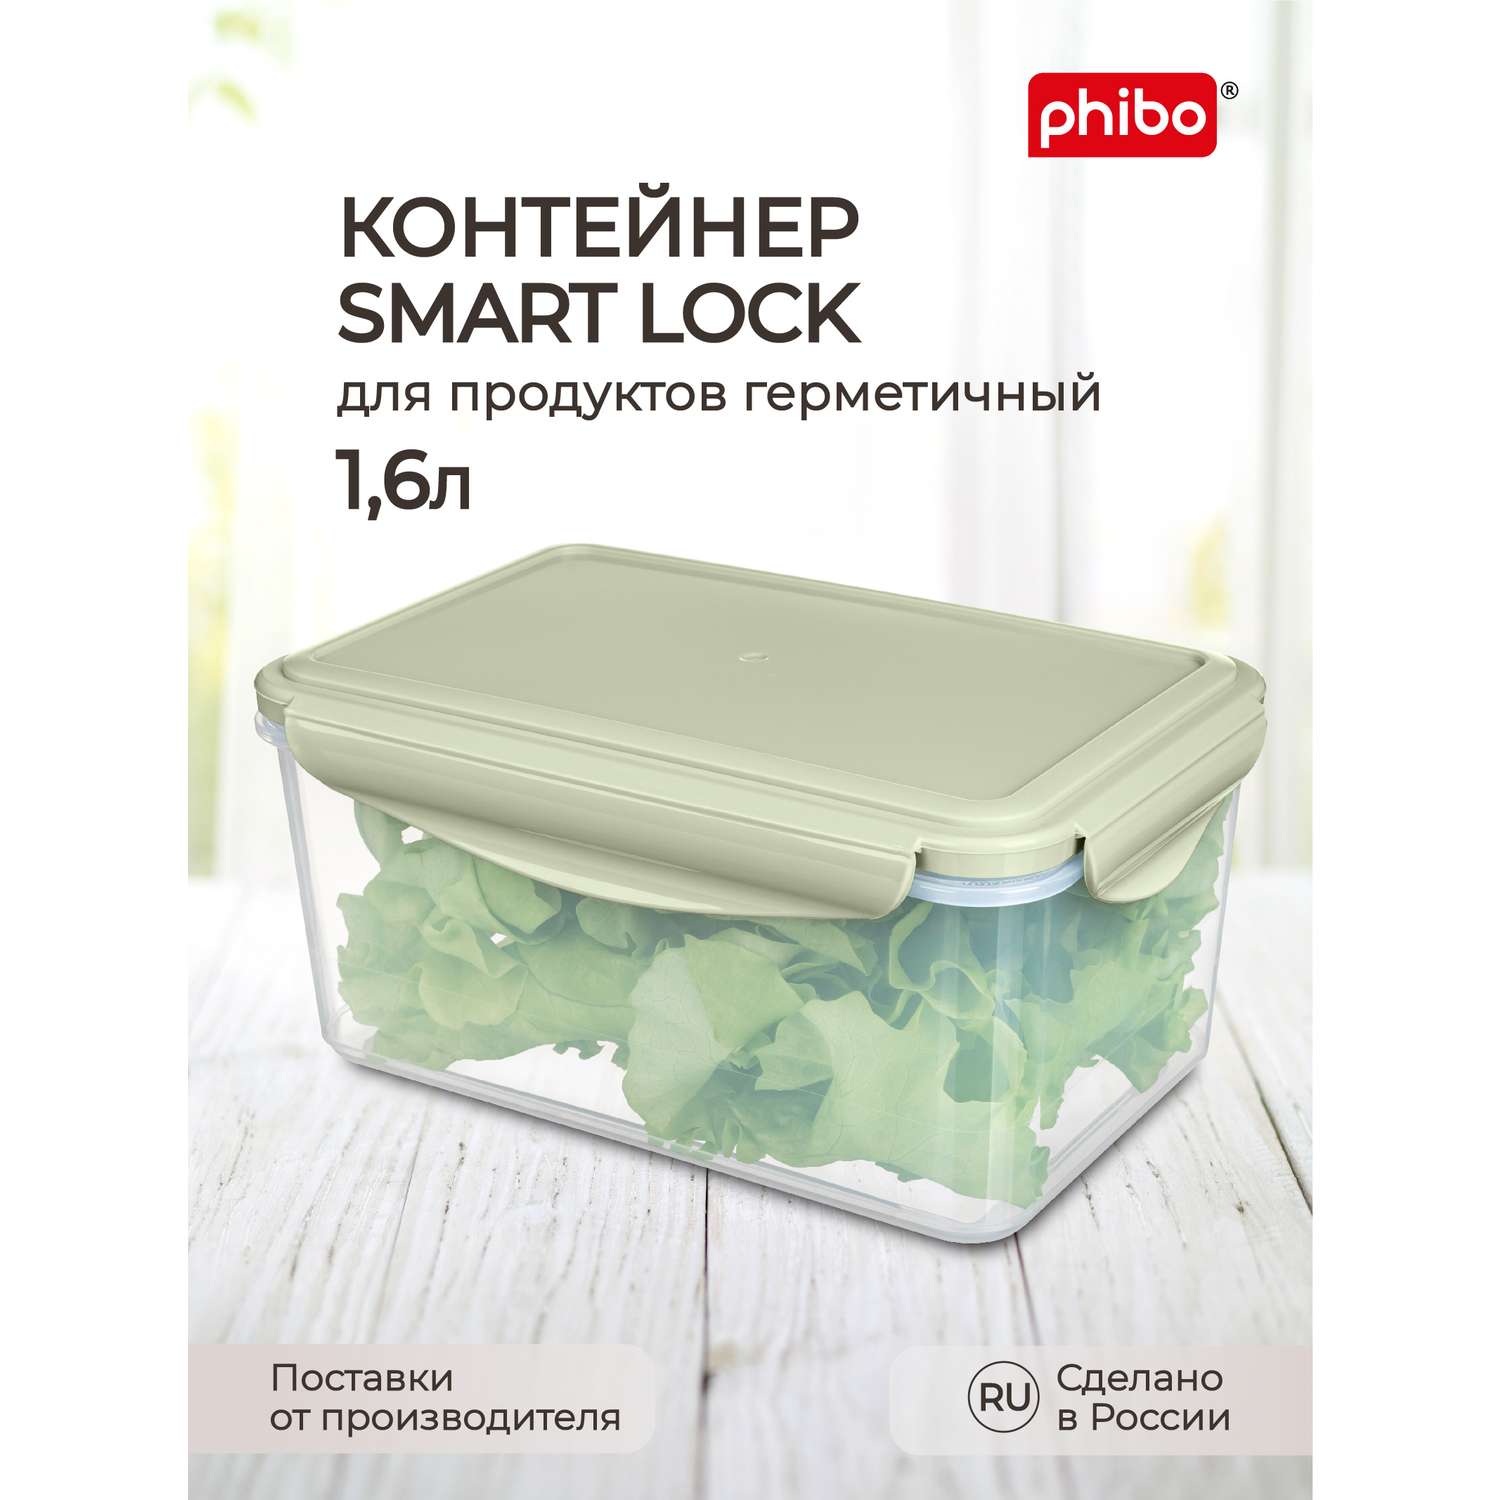 Контейнер Phibo для продуктов герметичный Smart Lock прямоугольный 1.6л зеленый - фото 1